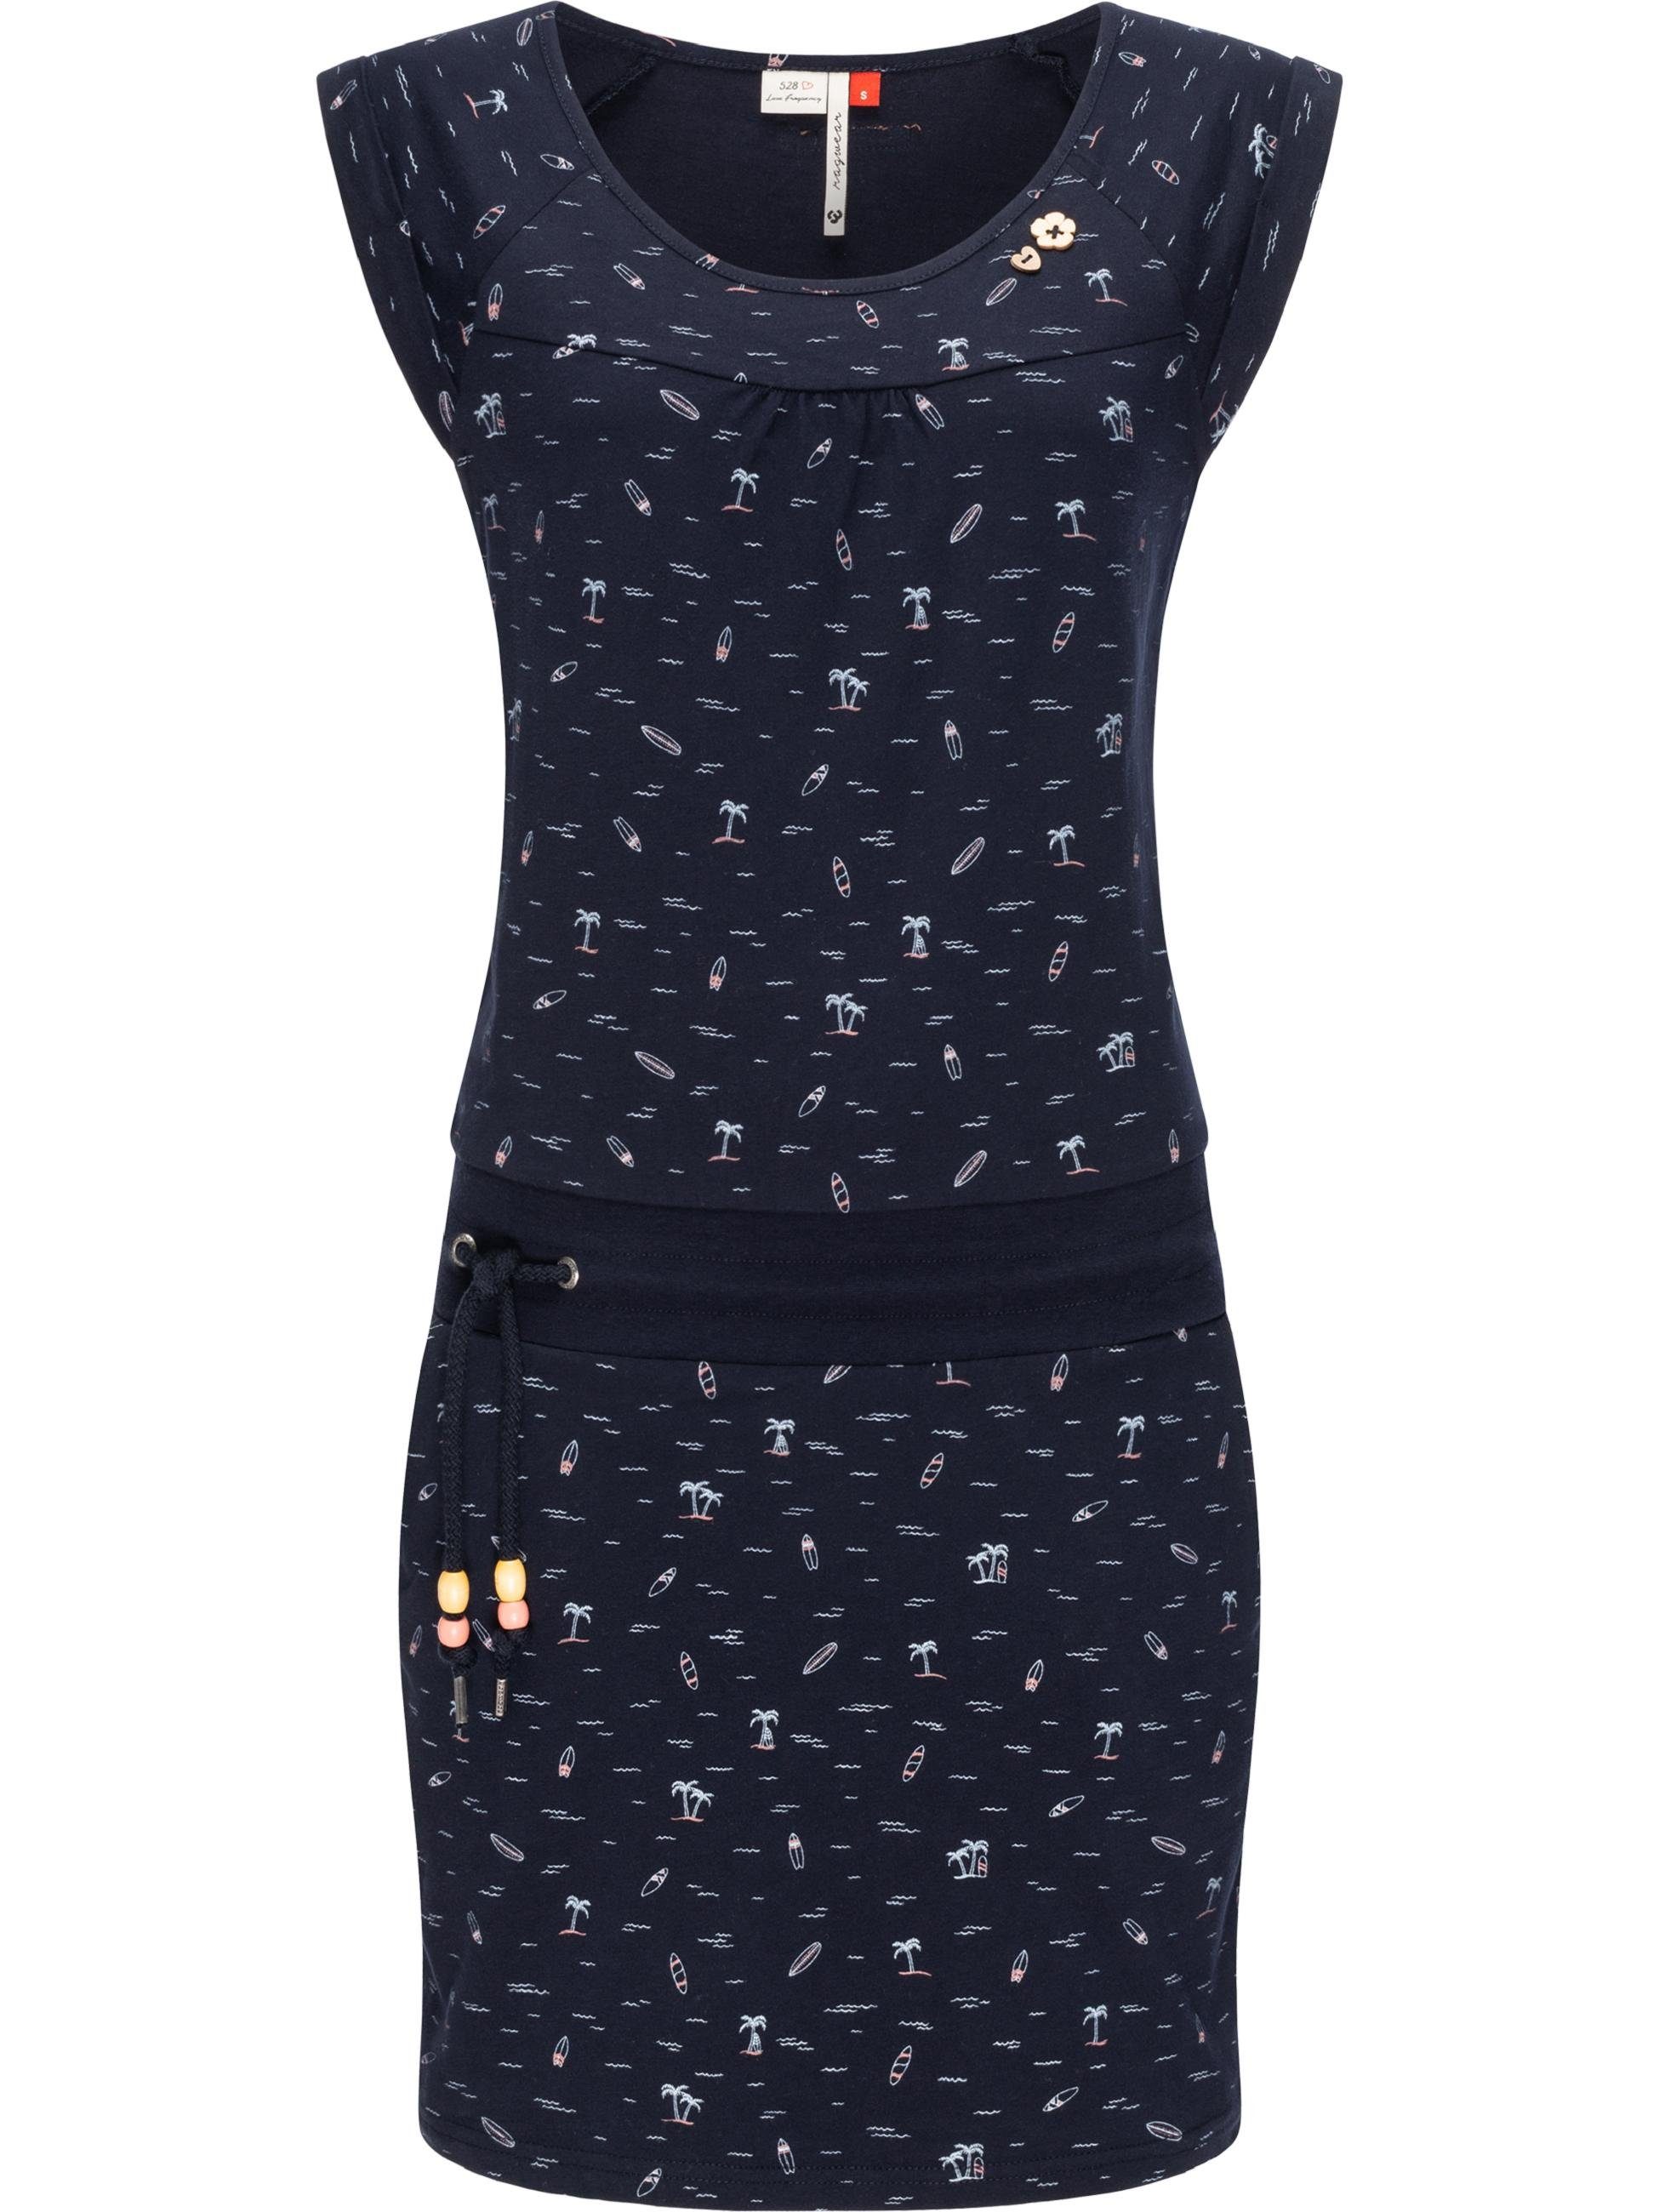 Ragwear Sommerkleid Qualität, 100% vegan leichtes u. hergestellt Kleid Baumwoll Penelope mit Hochwertige Print, Verarbeitung